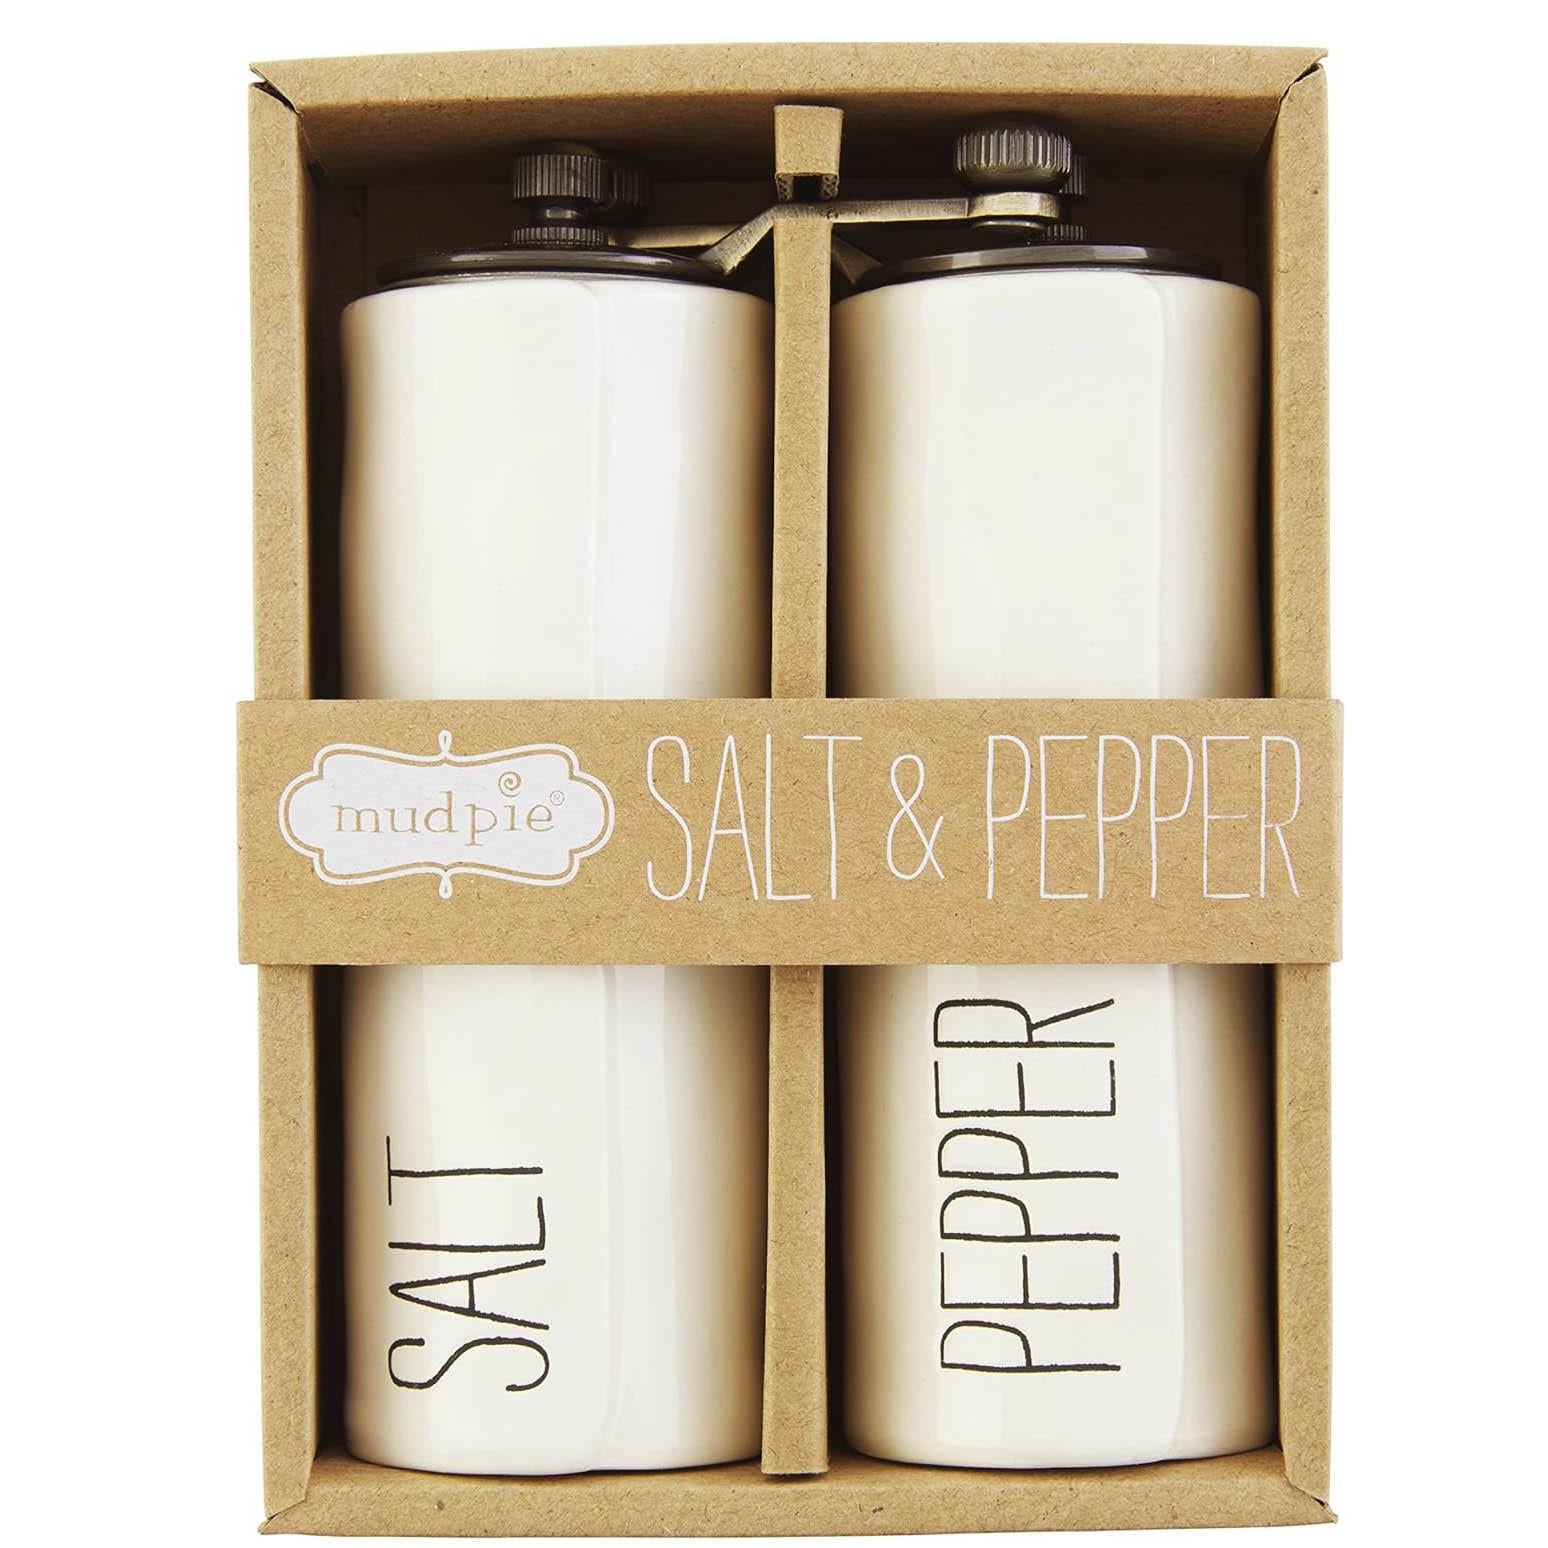  White ceramic salt and pepper in box